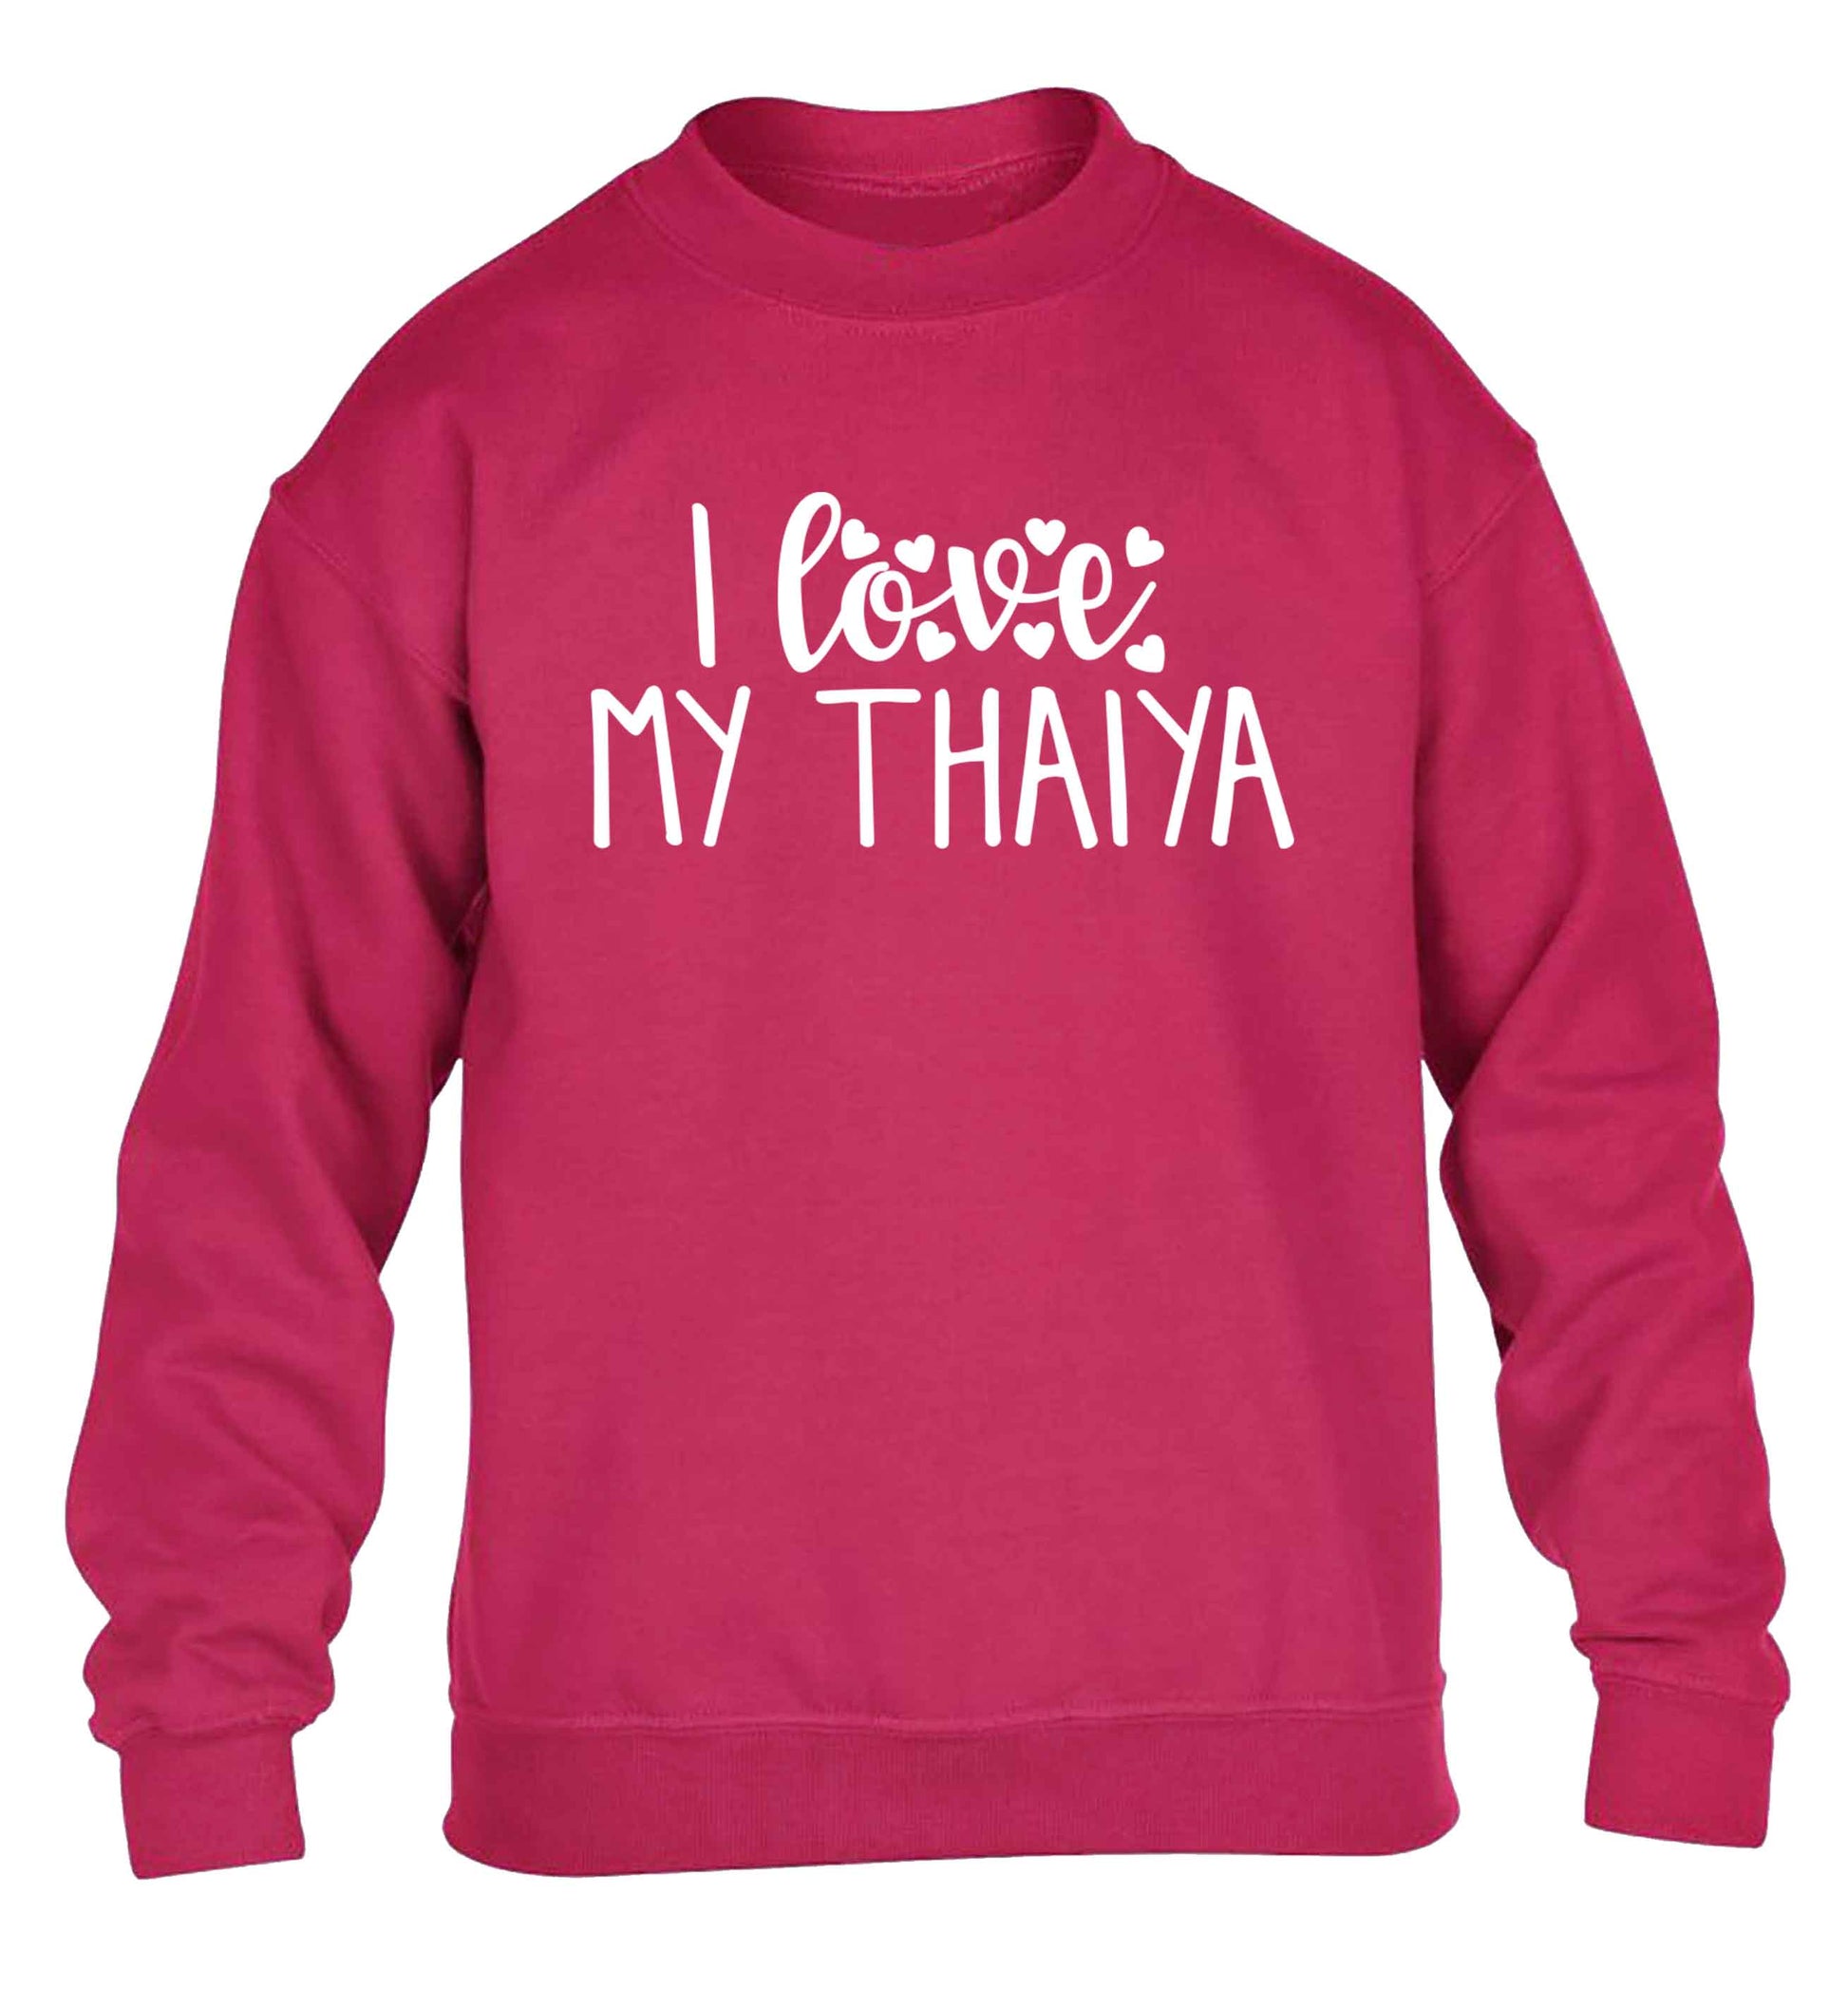 I love my thaiya children's pink sweater 12-13 Years